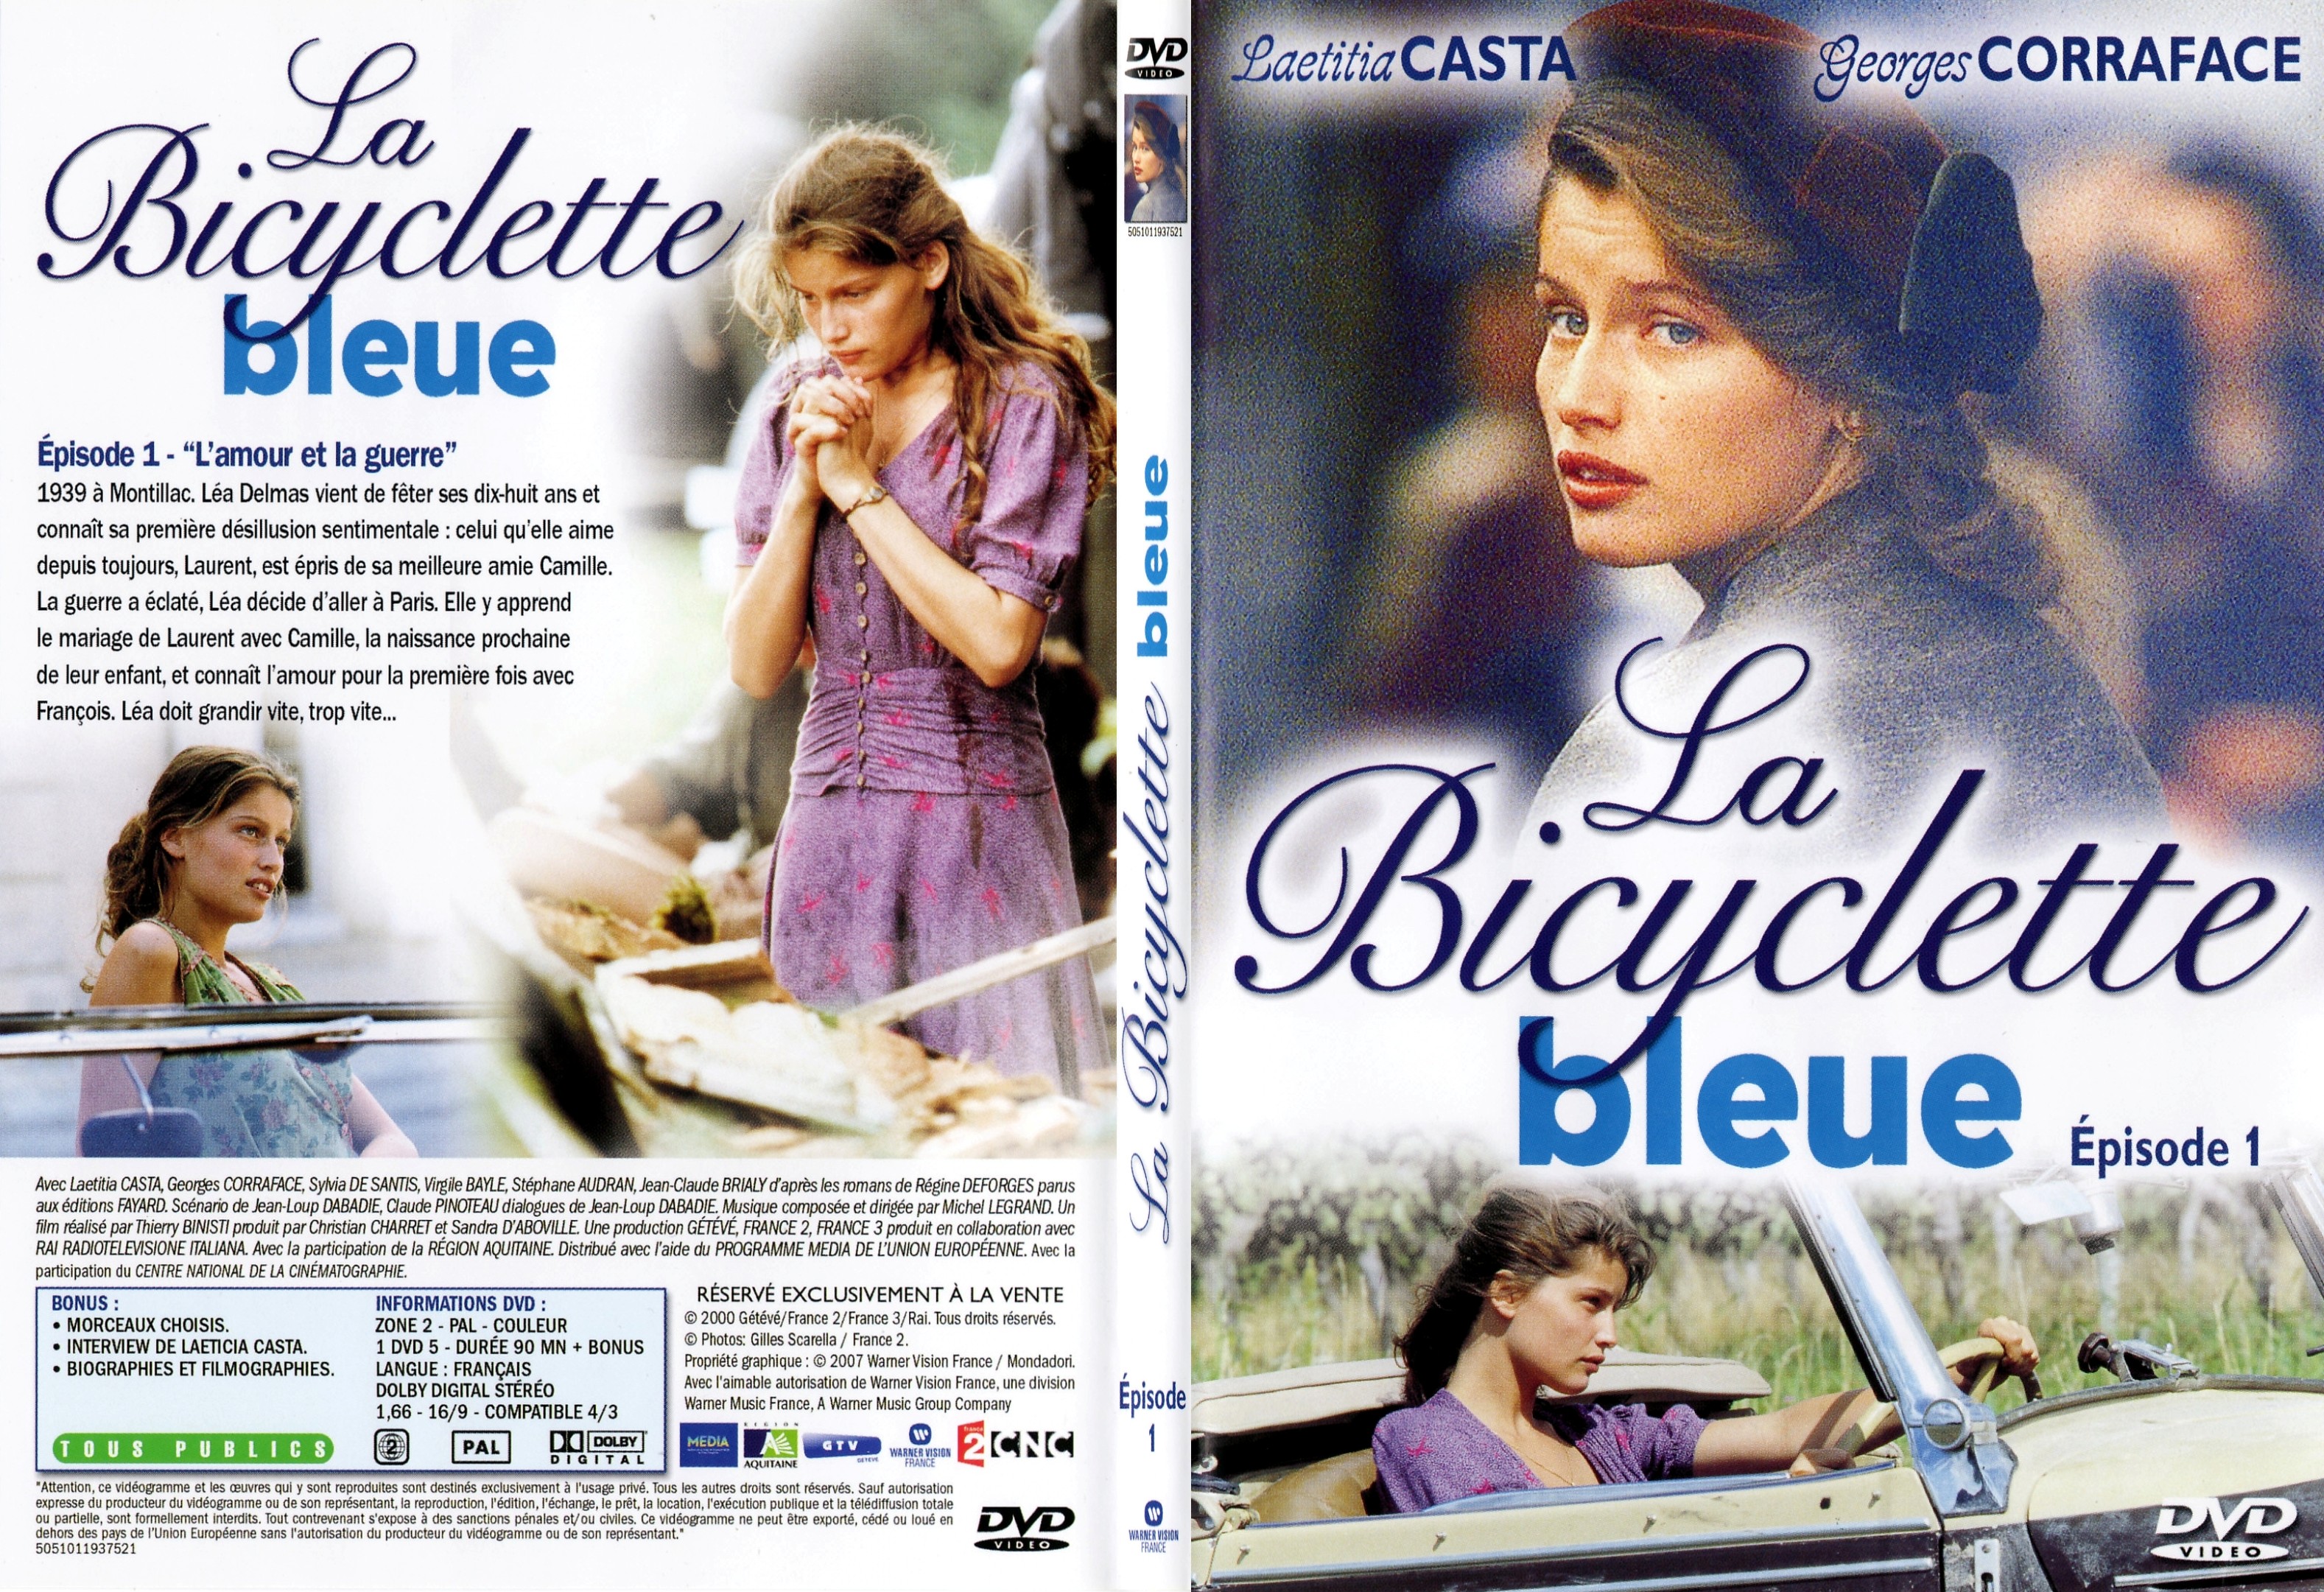 Jaquette DVD La bicyclette bleue Episode 1 - SLIM